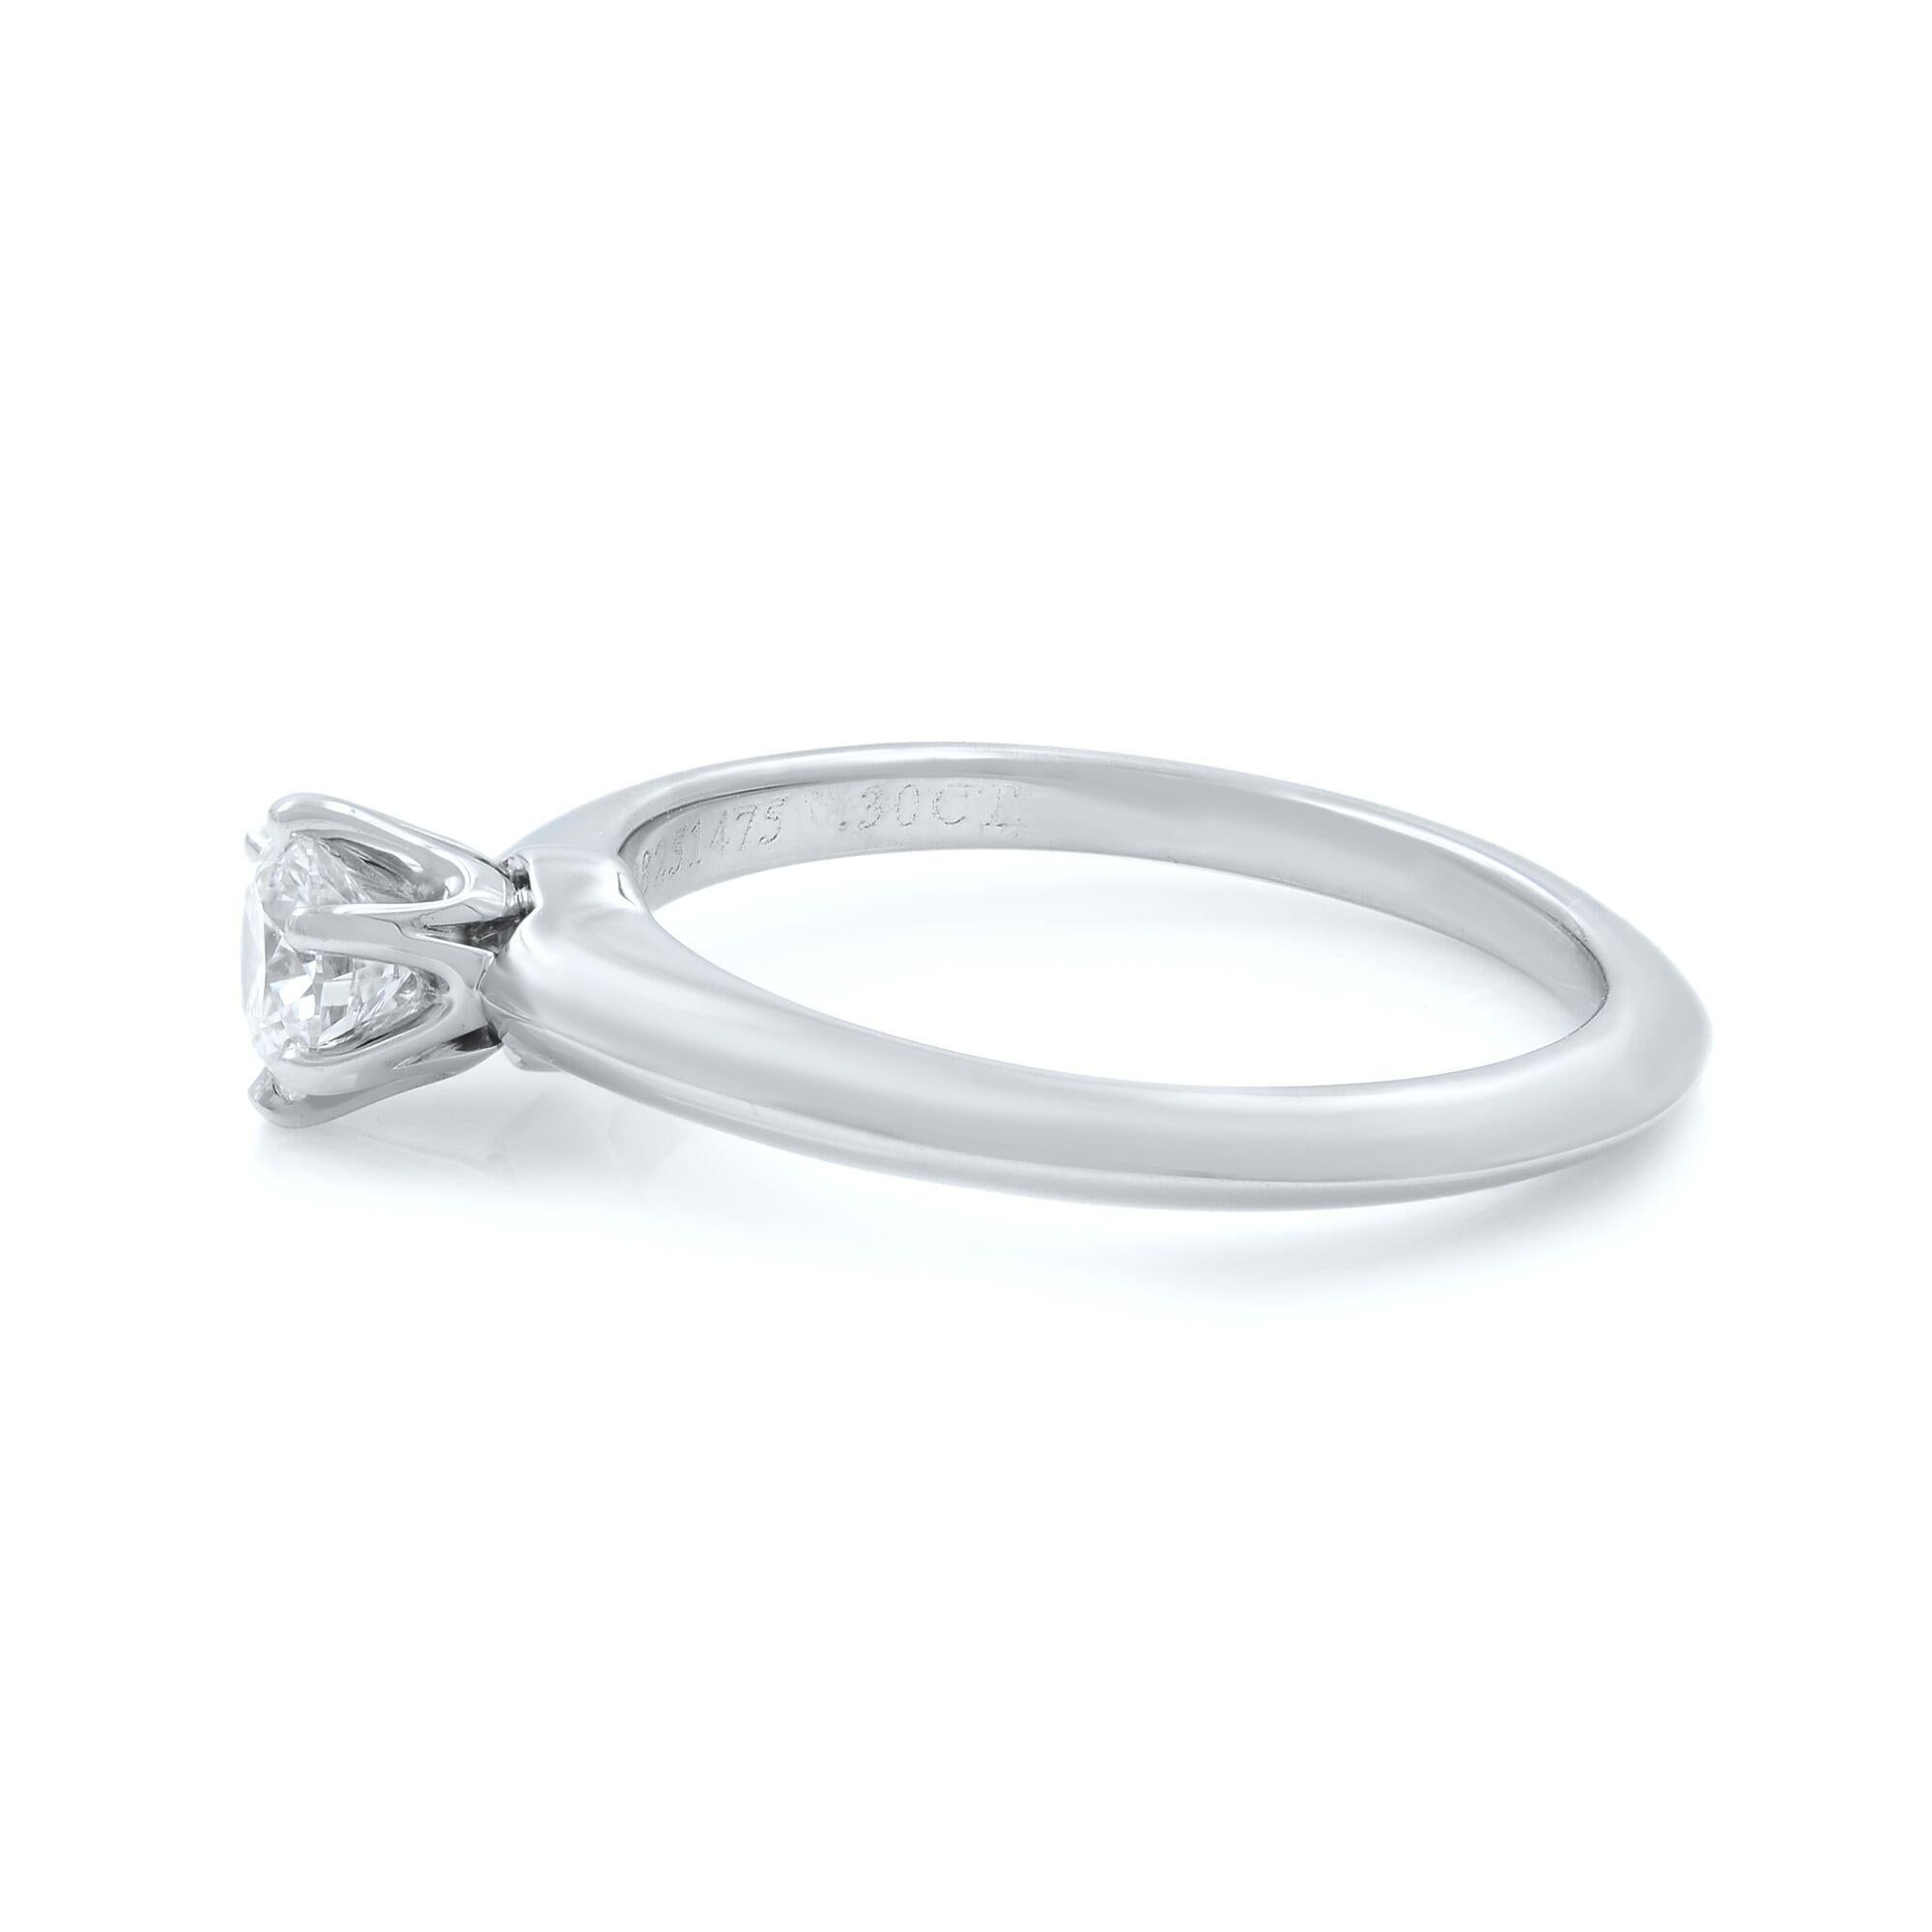 Tiffany & Co klassischer Solitär-Diamant-Verlobungsring mit rundem Schliff, gefertigt aus Platin. Dieser Ring ist mit 0,30 Karat runden Diamanten im Brillantschliff von Farbe G und Reinheit VS2 besetzt. Gepunztes Tiffany & Co. Ring Größe 4. Kann bei